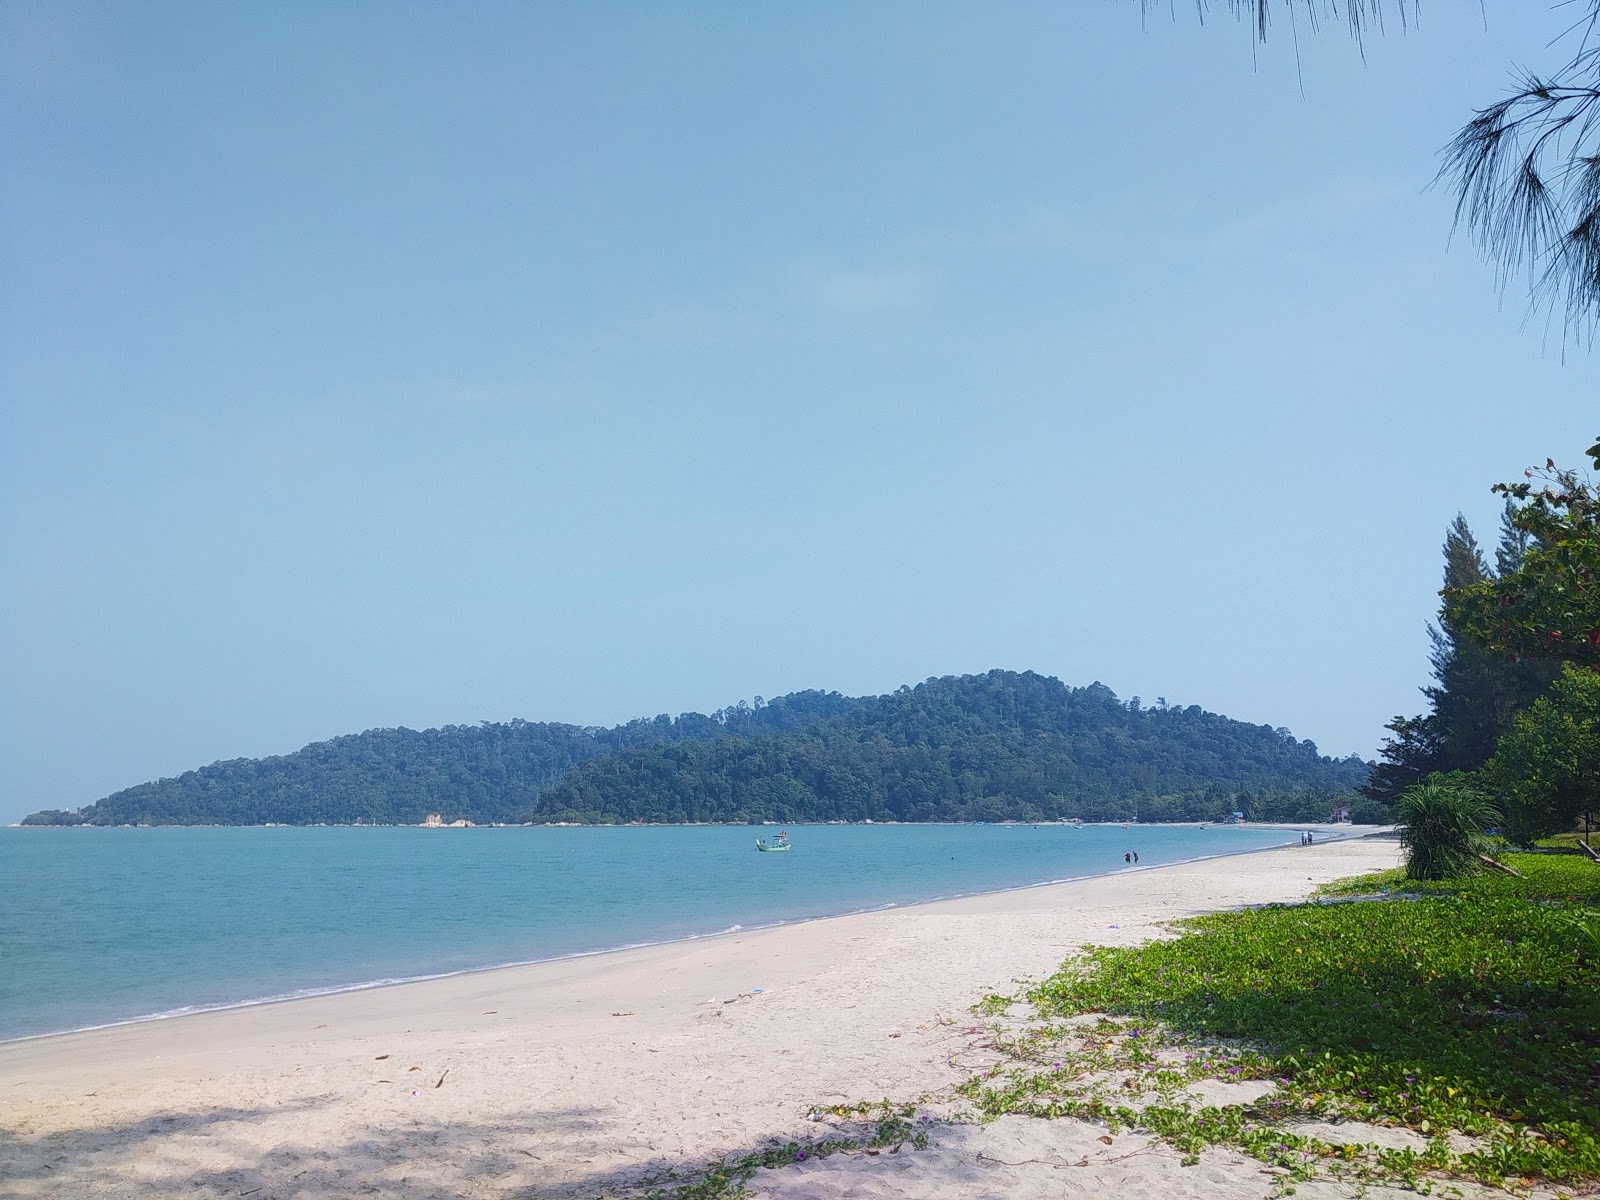 Photo de Teluk Senangin Beach - endroit populaire parmi les connaisseurs de la détente